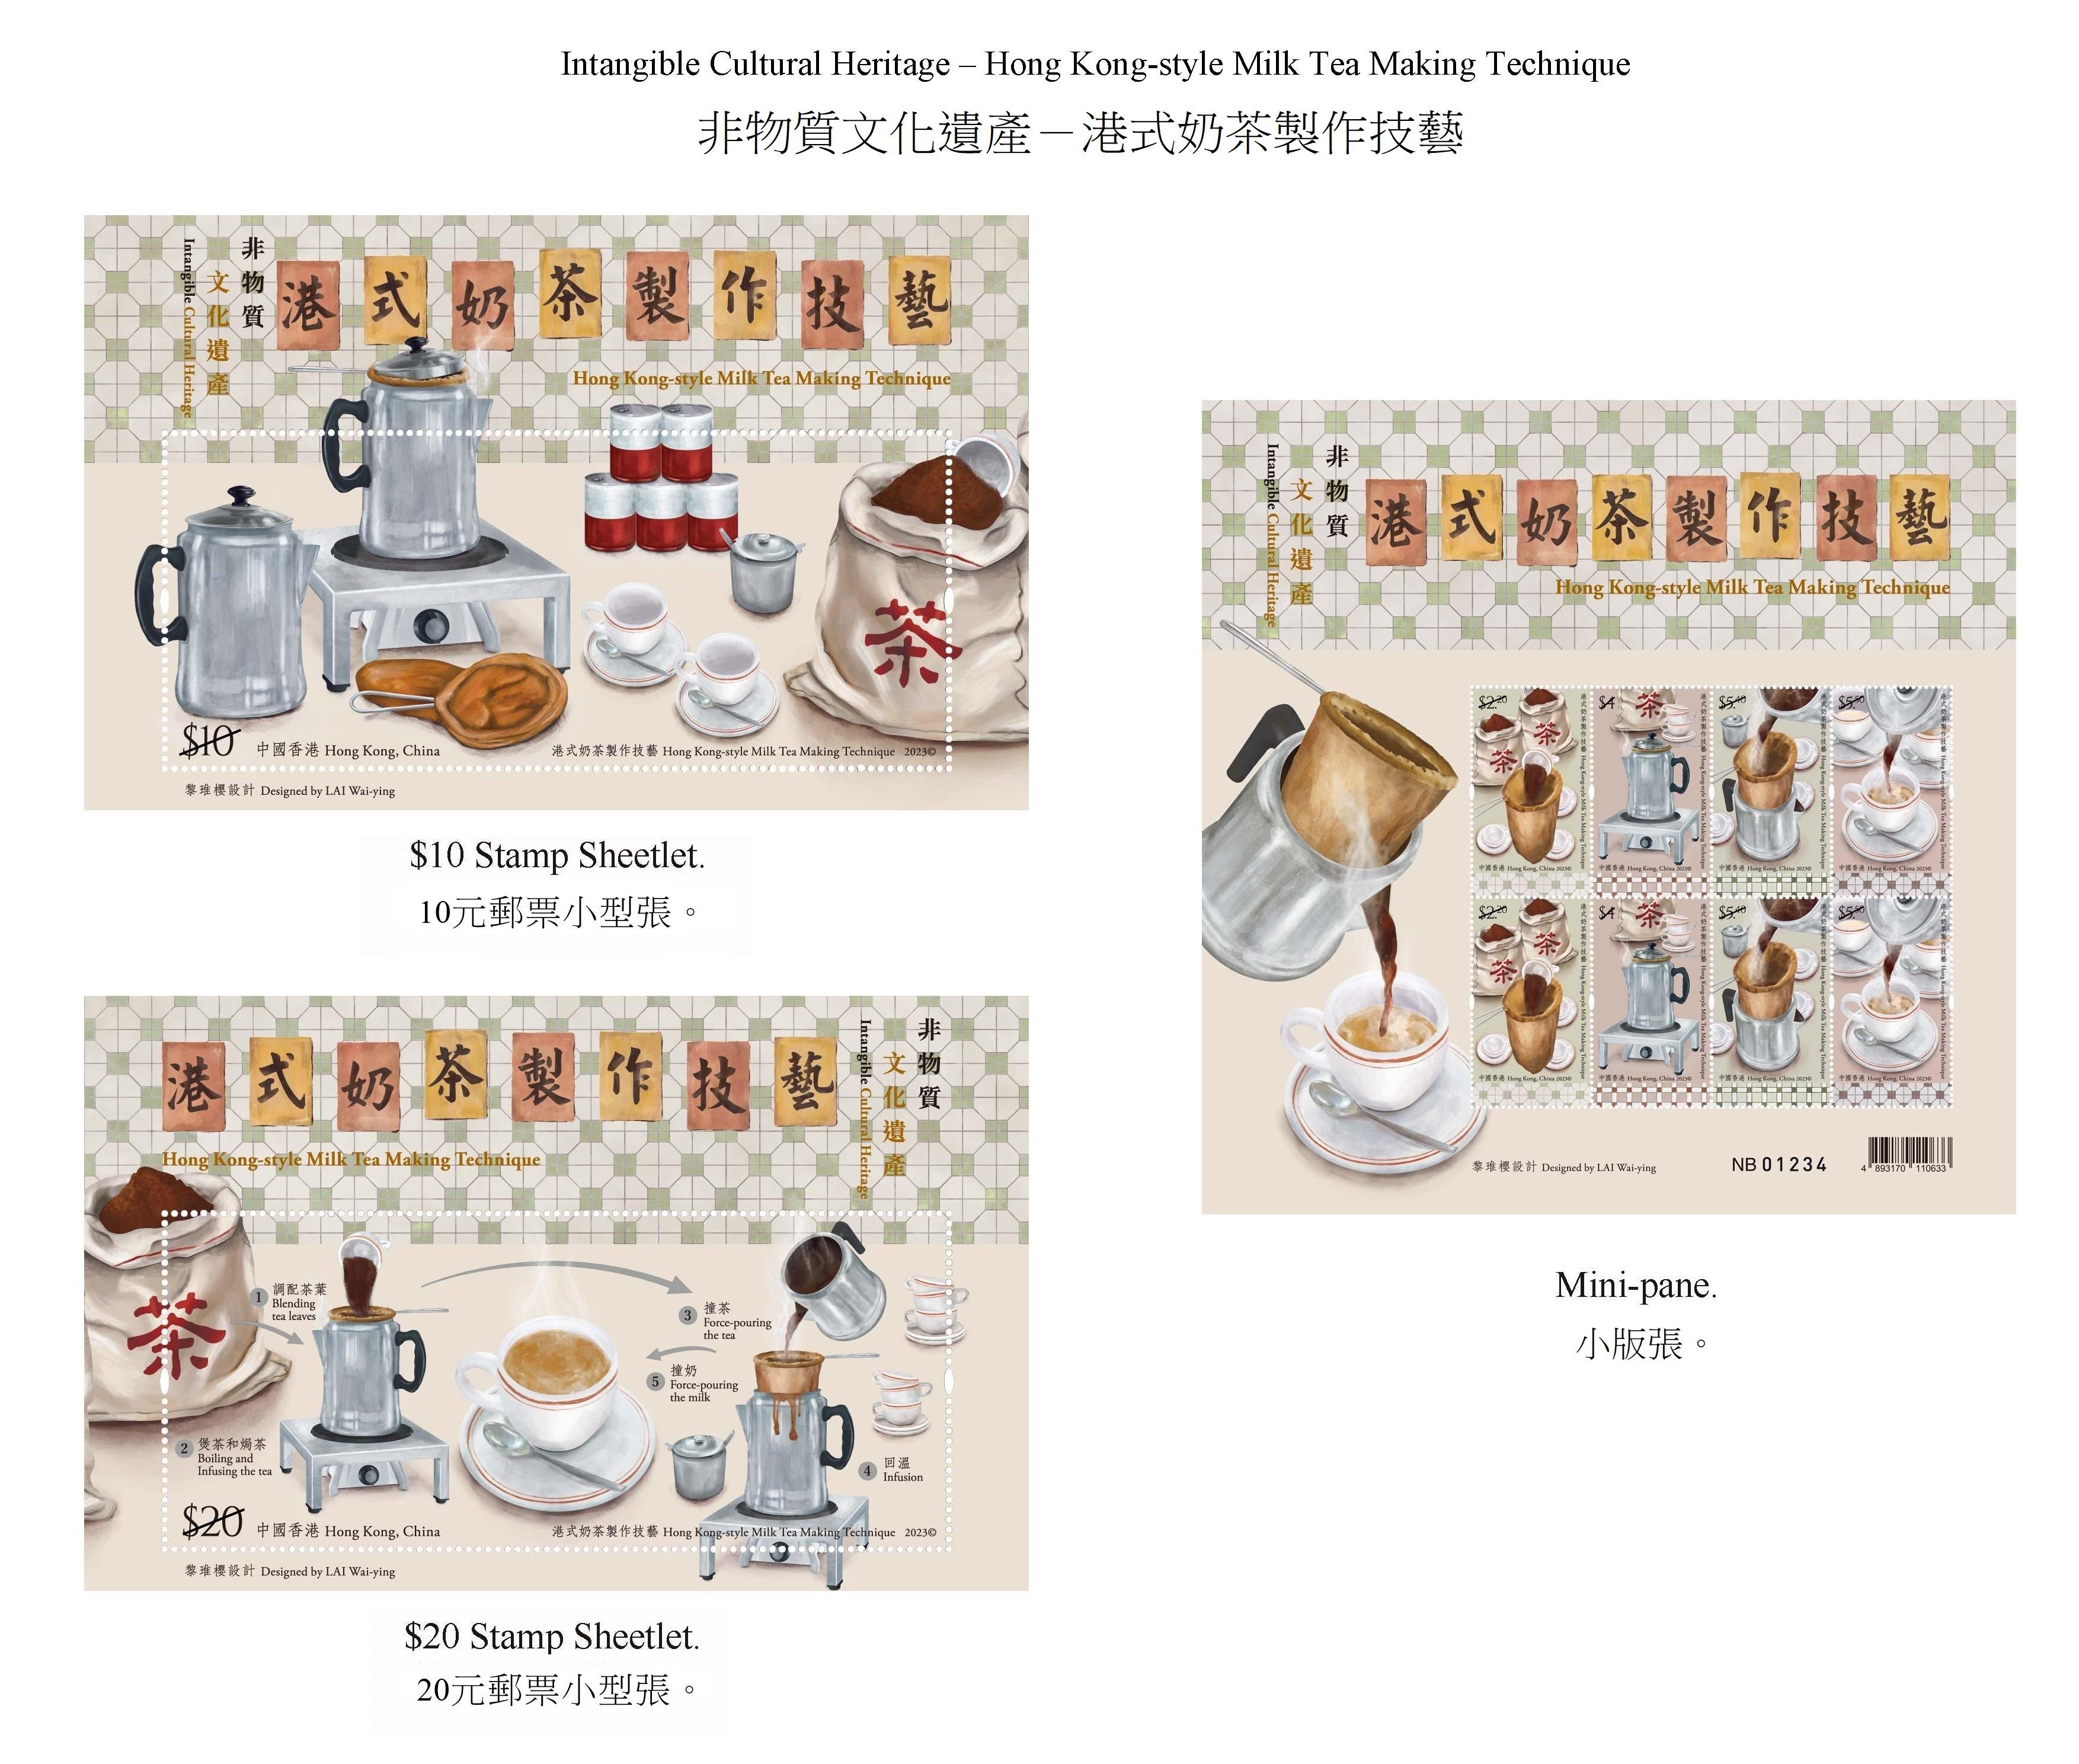 香港郵政七月二十五日（星期二）發行以「非物質文化遺產——港式奶茶製作技藝」為題的特別郵票及相關集郵品。圖示郵票小型張及小版張。